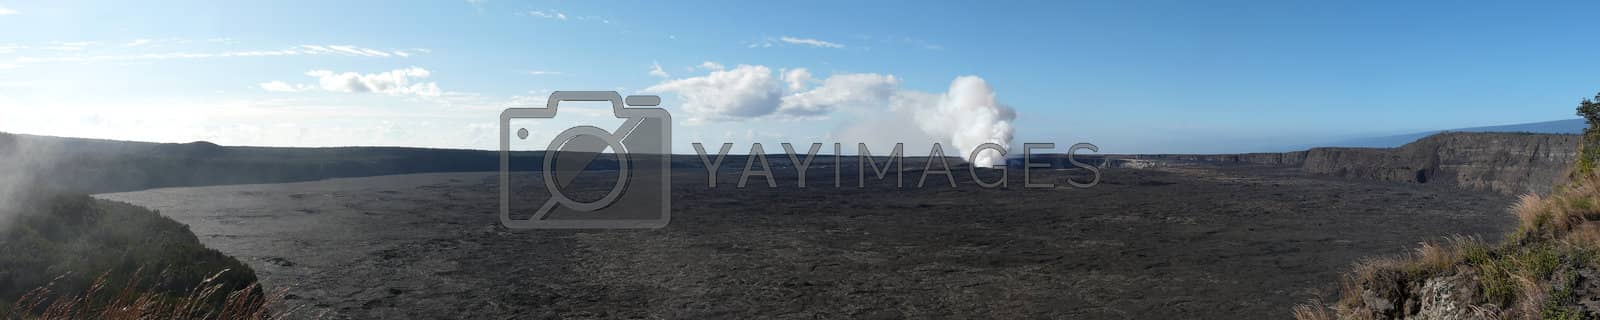 Royalty free image of Kilauea Caldera by pljvv